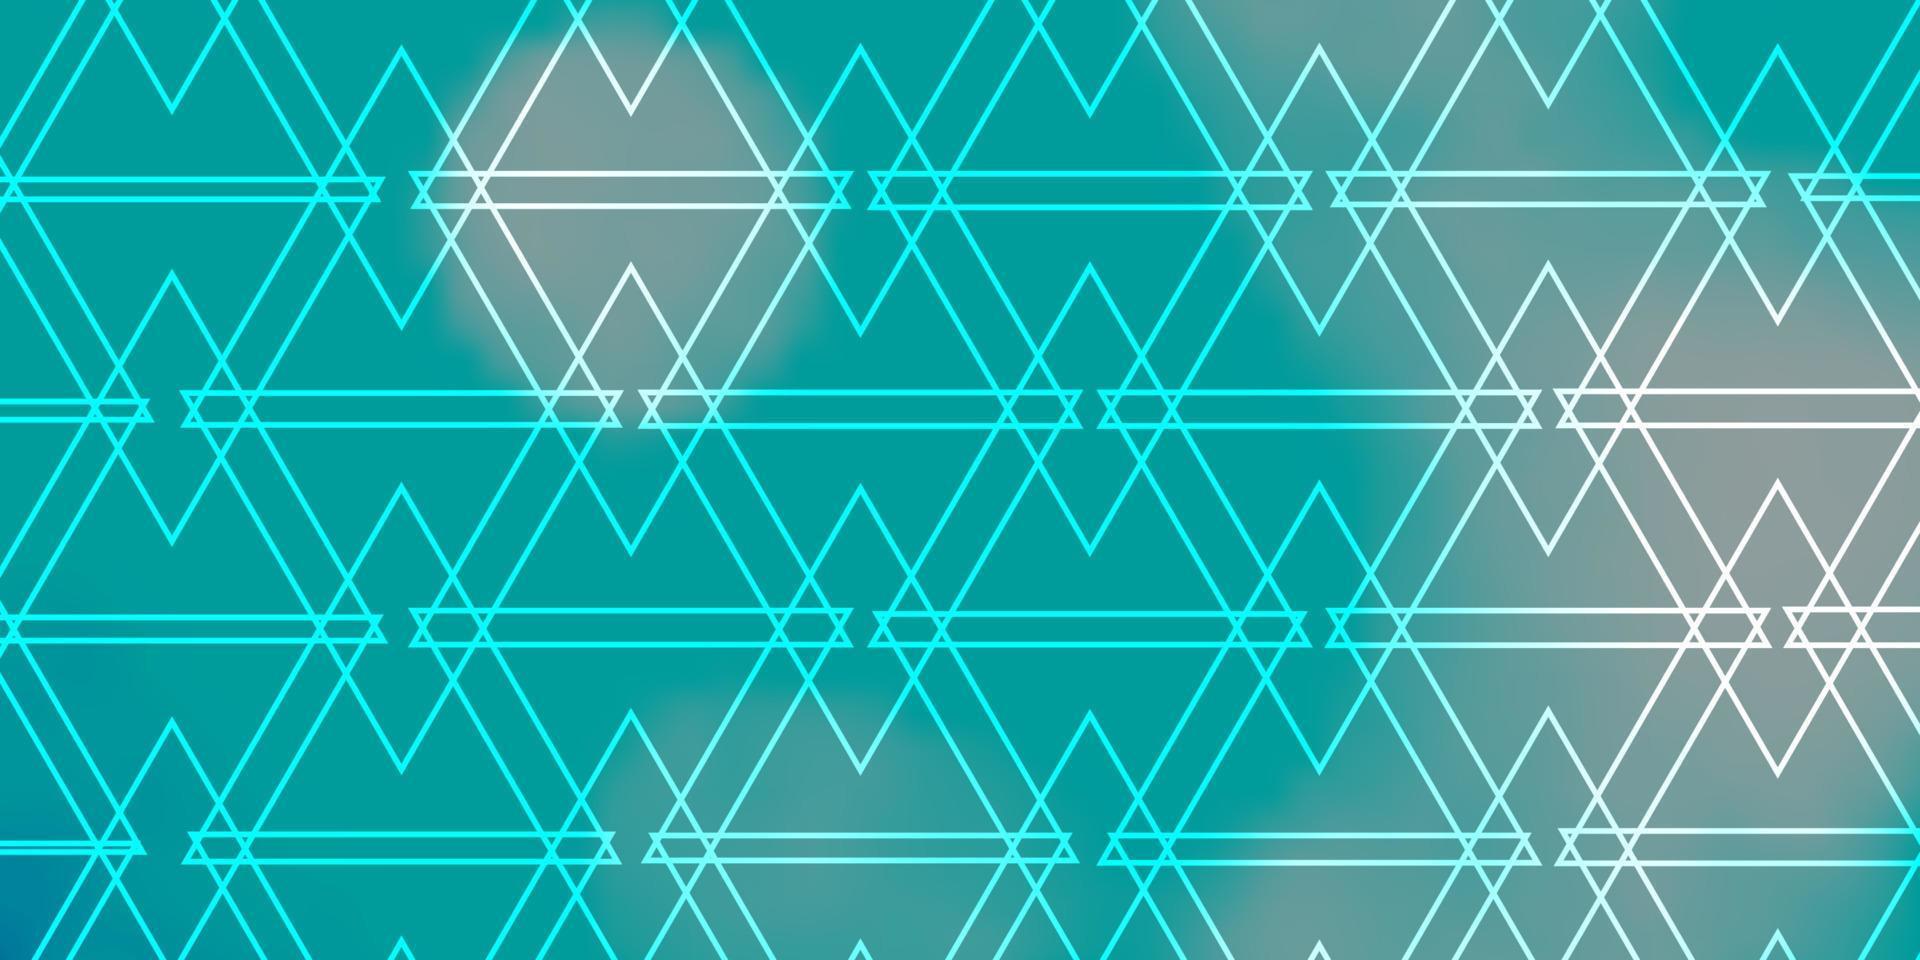 fundo vector azul, verde claro com linhas, triângulos.